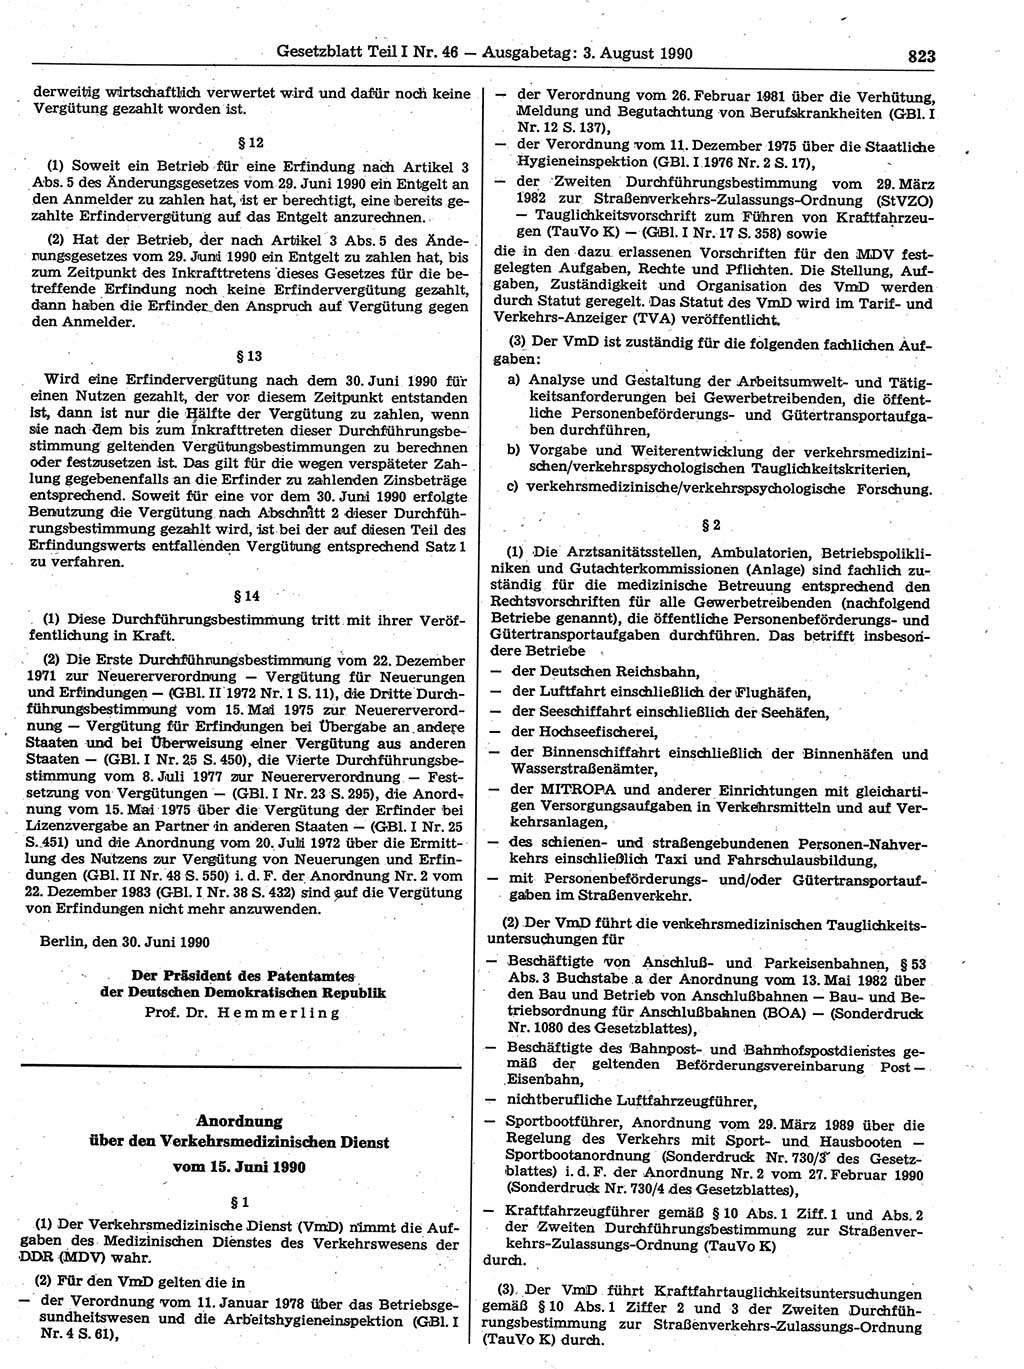 Gesetzblatt (GBl.) der Deutschen Demokratischen Republik (DDR) Teil Ⅰ 1990, Seite 823 (GBl. DDR Ⅰ 1990, S. 823)